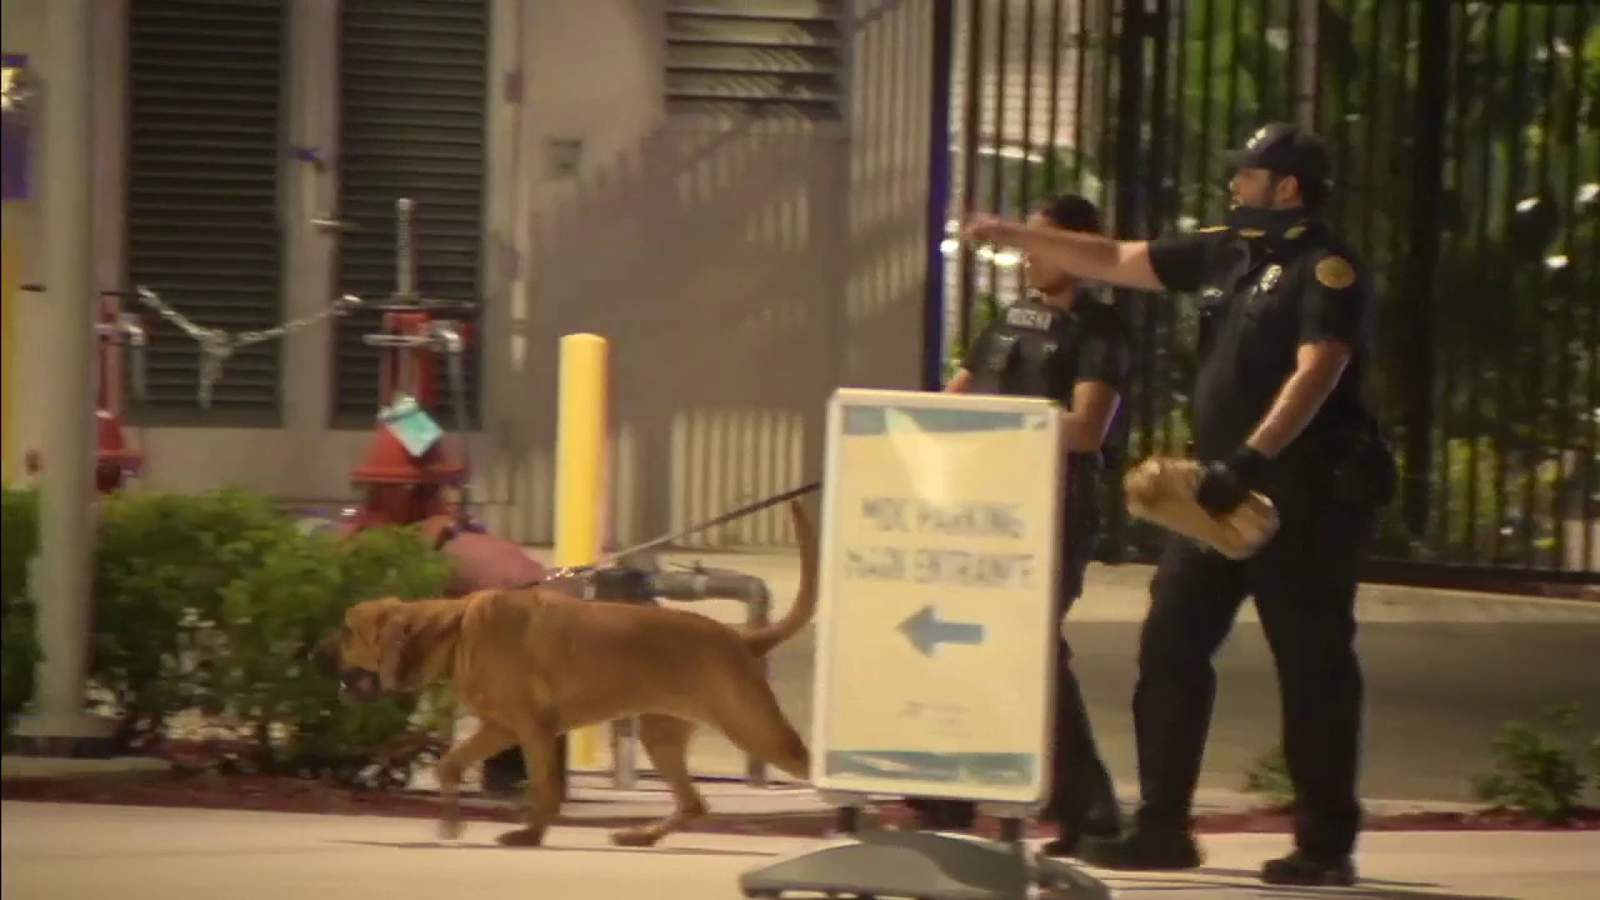 Hombre hospitalizado tras fuga de arresto en Miami se escapa mientras bajo custodia policial